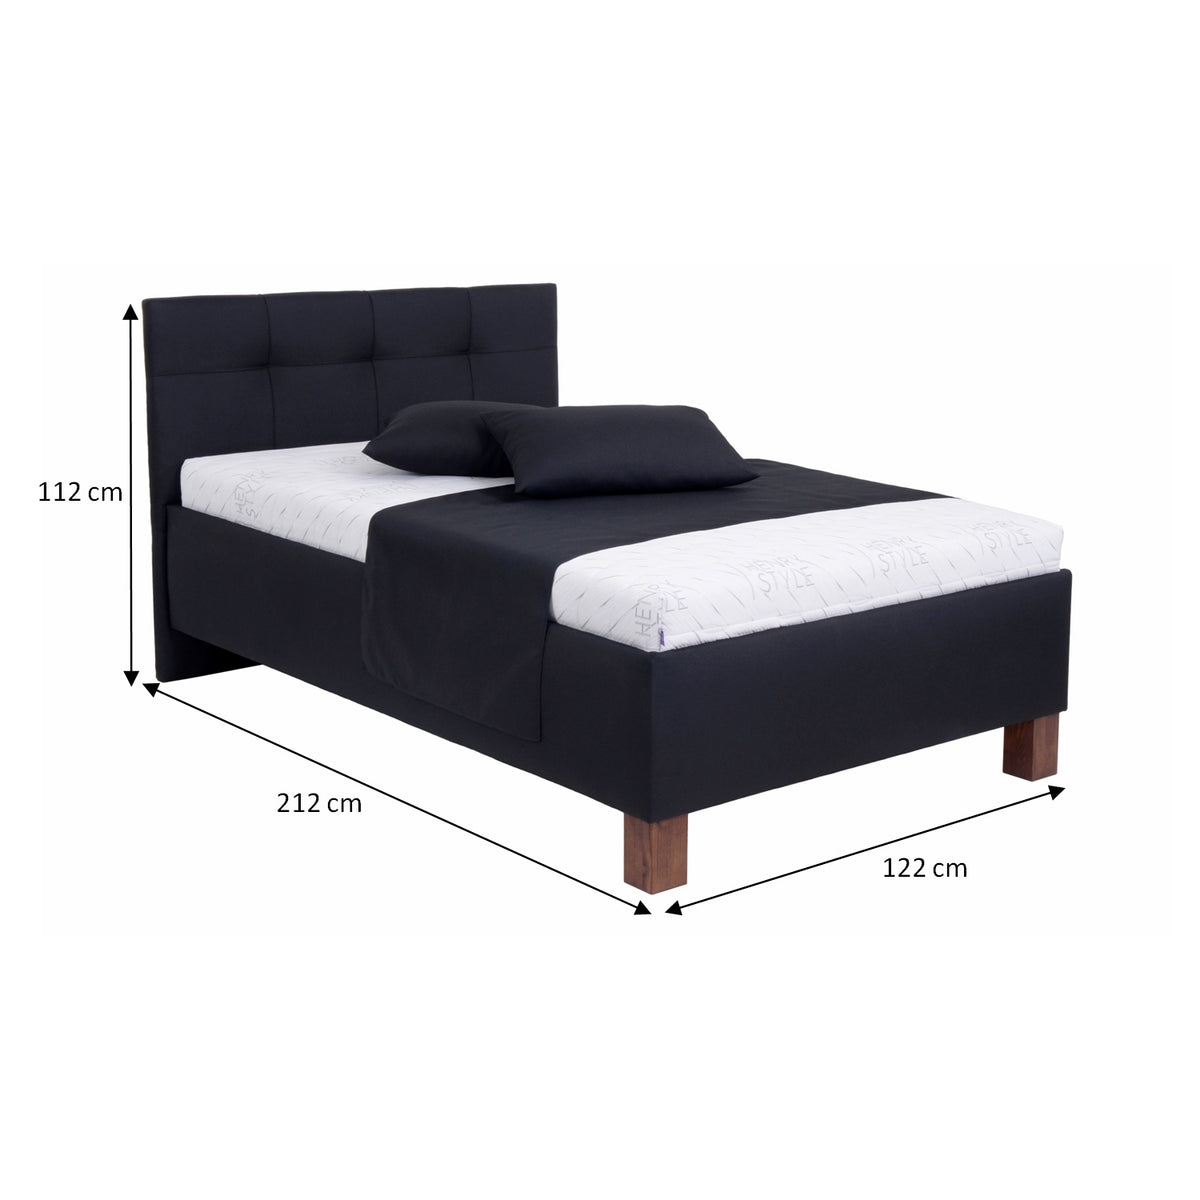 Čalouněná postel Mary 120x200, černá, bez matrace